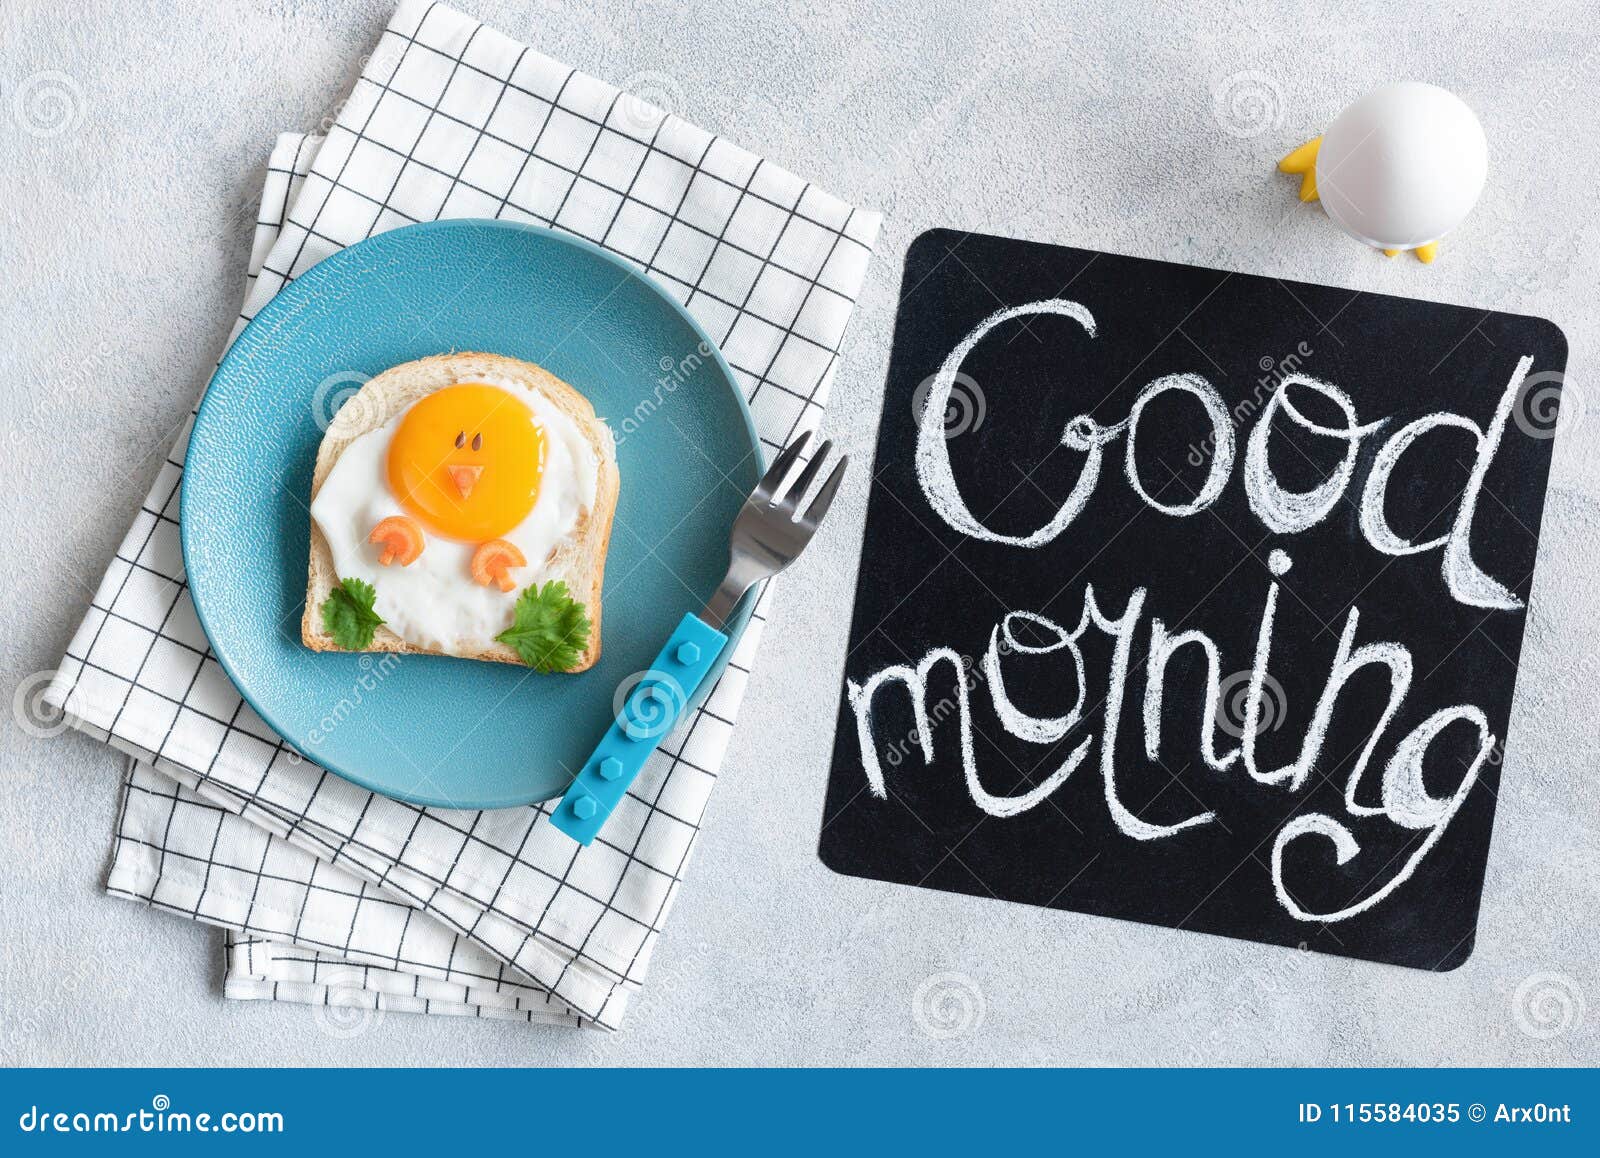 Good Morning Breakfast for Kids. Egg Sandwich Chicken Stock Image ...